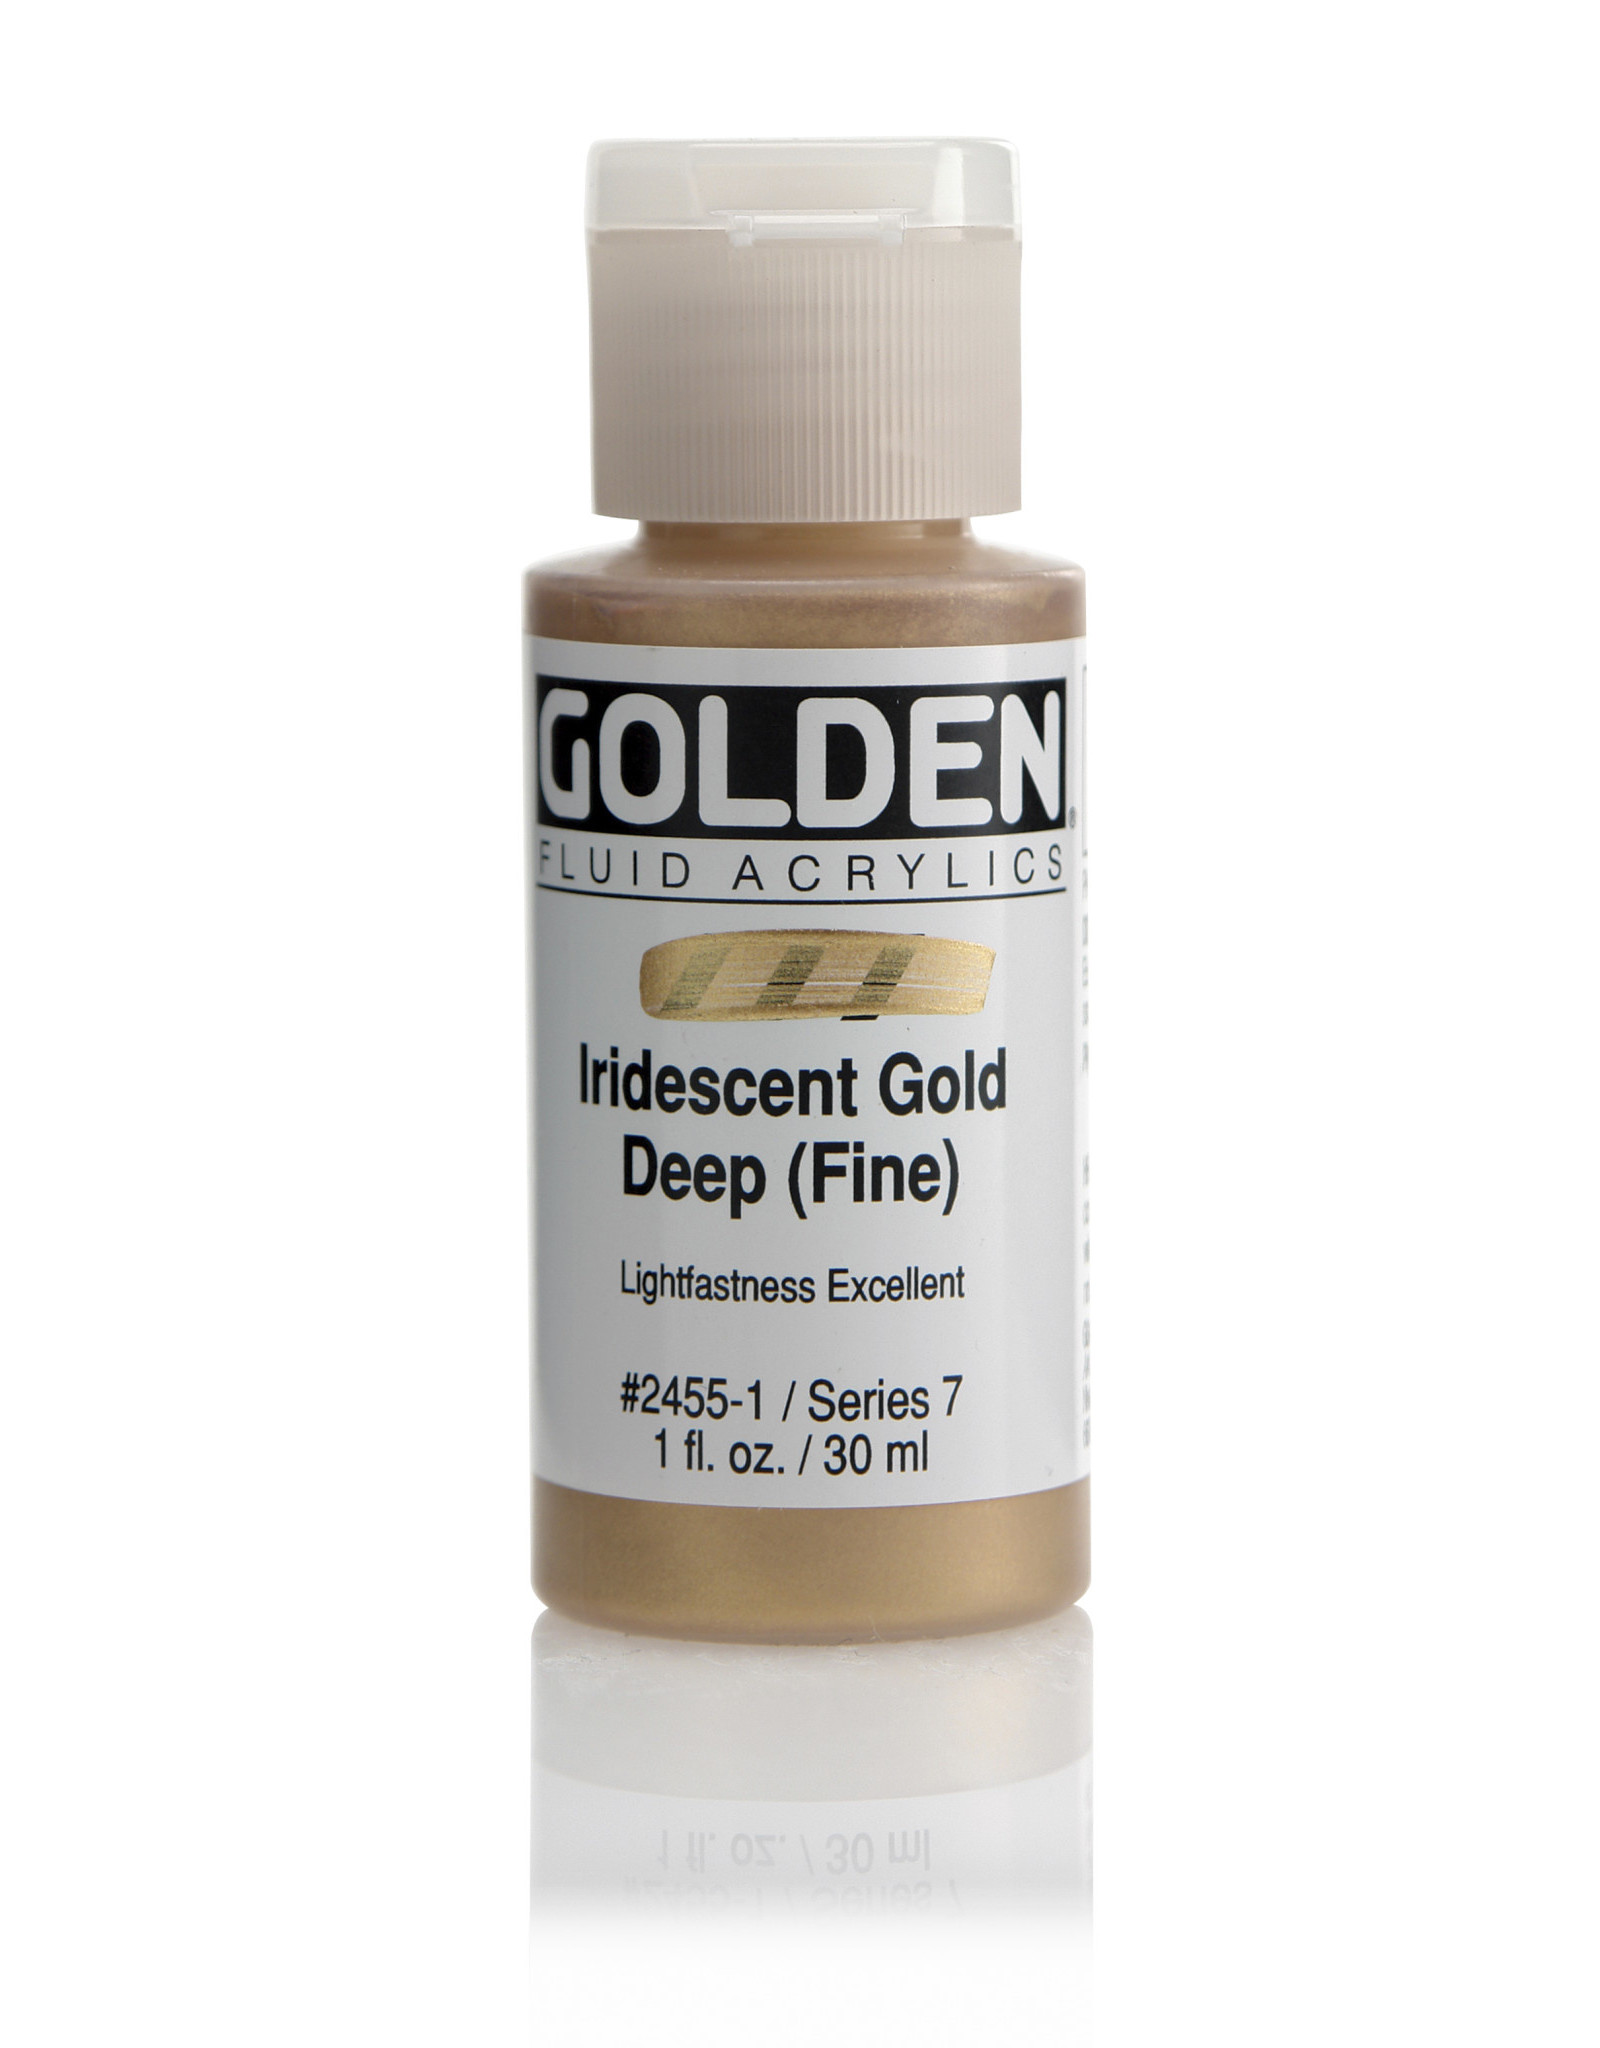 Golden Golden Fluid Acrylics, Iridescent Gold Deep (Fine) 1oz Cylinder